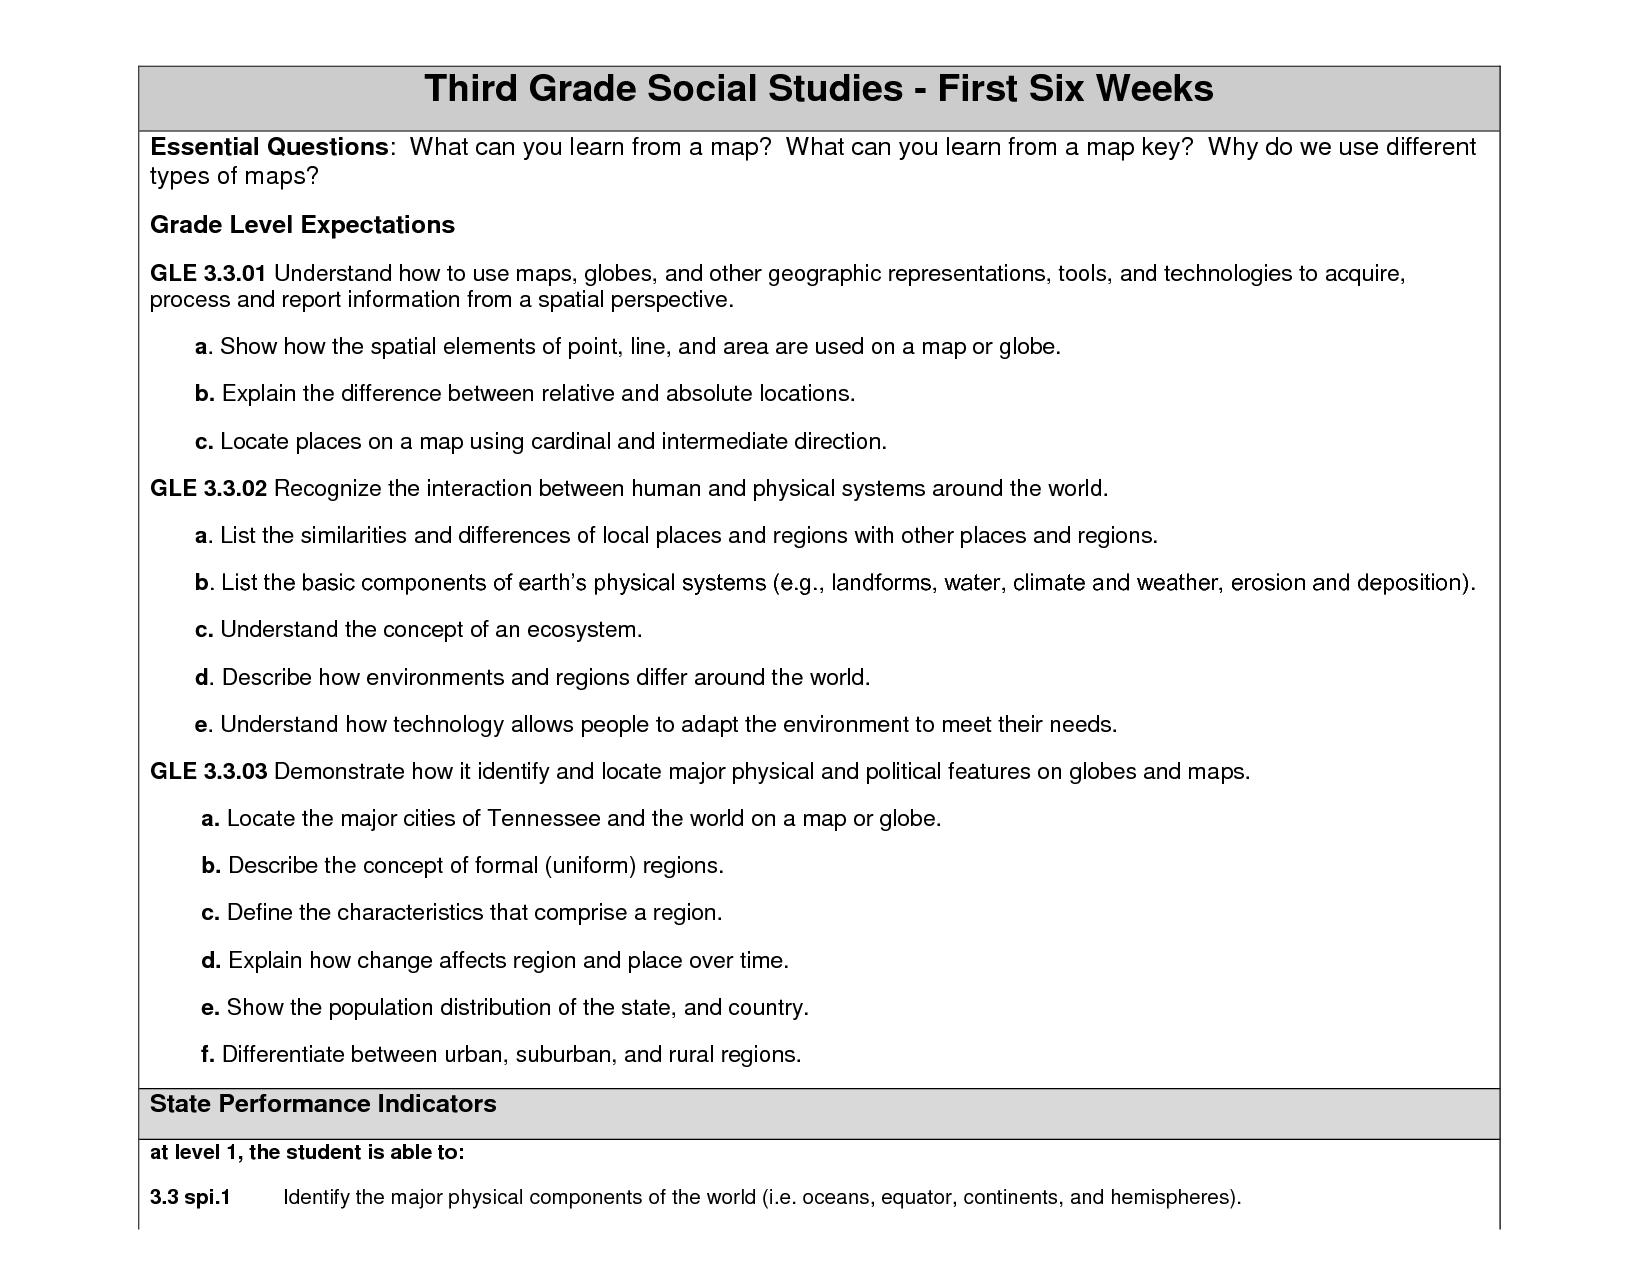 8-best-images-of-2nd-grade-social-studies-worksheets-free-2nd-grade